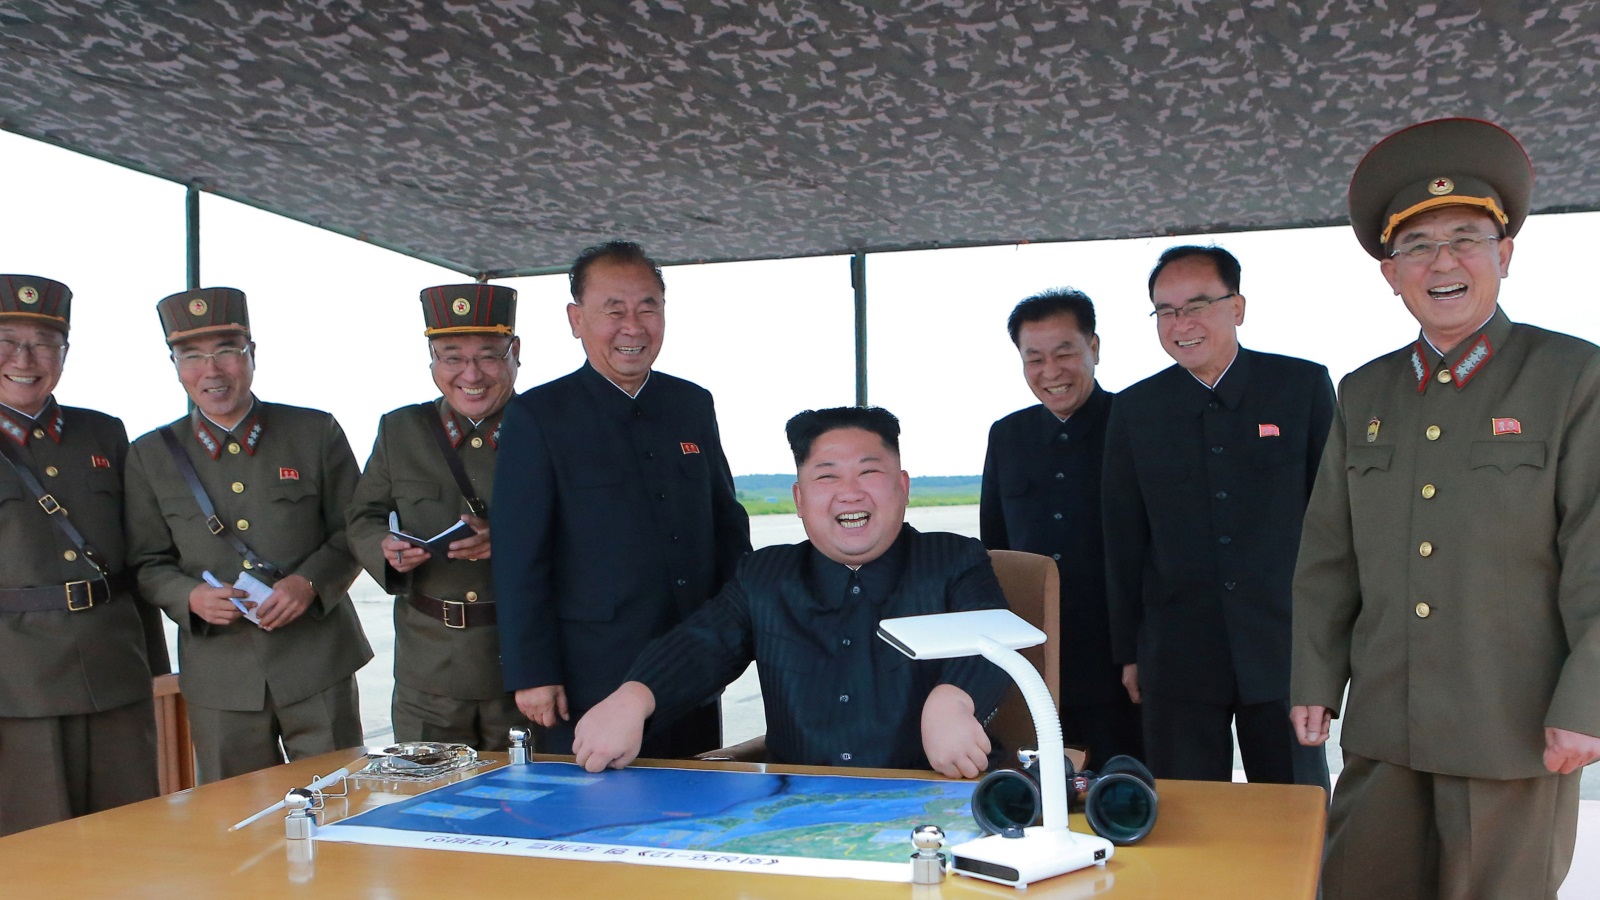 ‪قادة كوريا الشمالية قابلوا ردود الفعل الدولية على التجارب الصاروخية بابتسامات عريضة‬ قادة كوريا الشمالية قابلوا ردود الفعل الدولية على التجارب الصاروخية بابتسامات عريضة (رويترز)